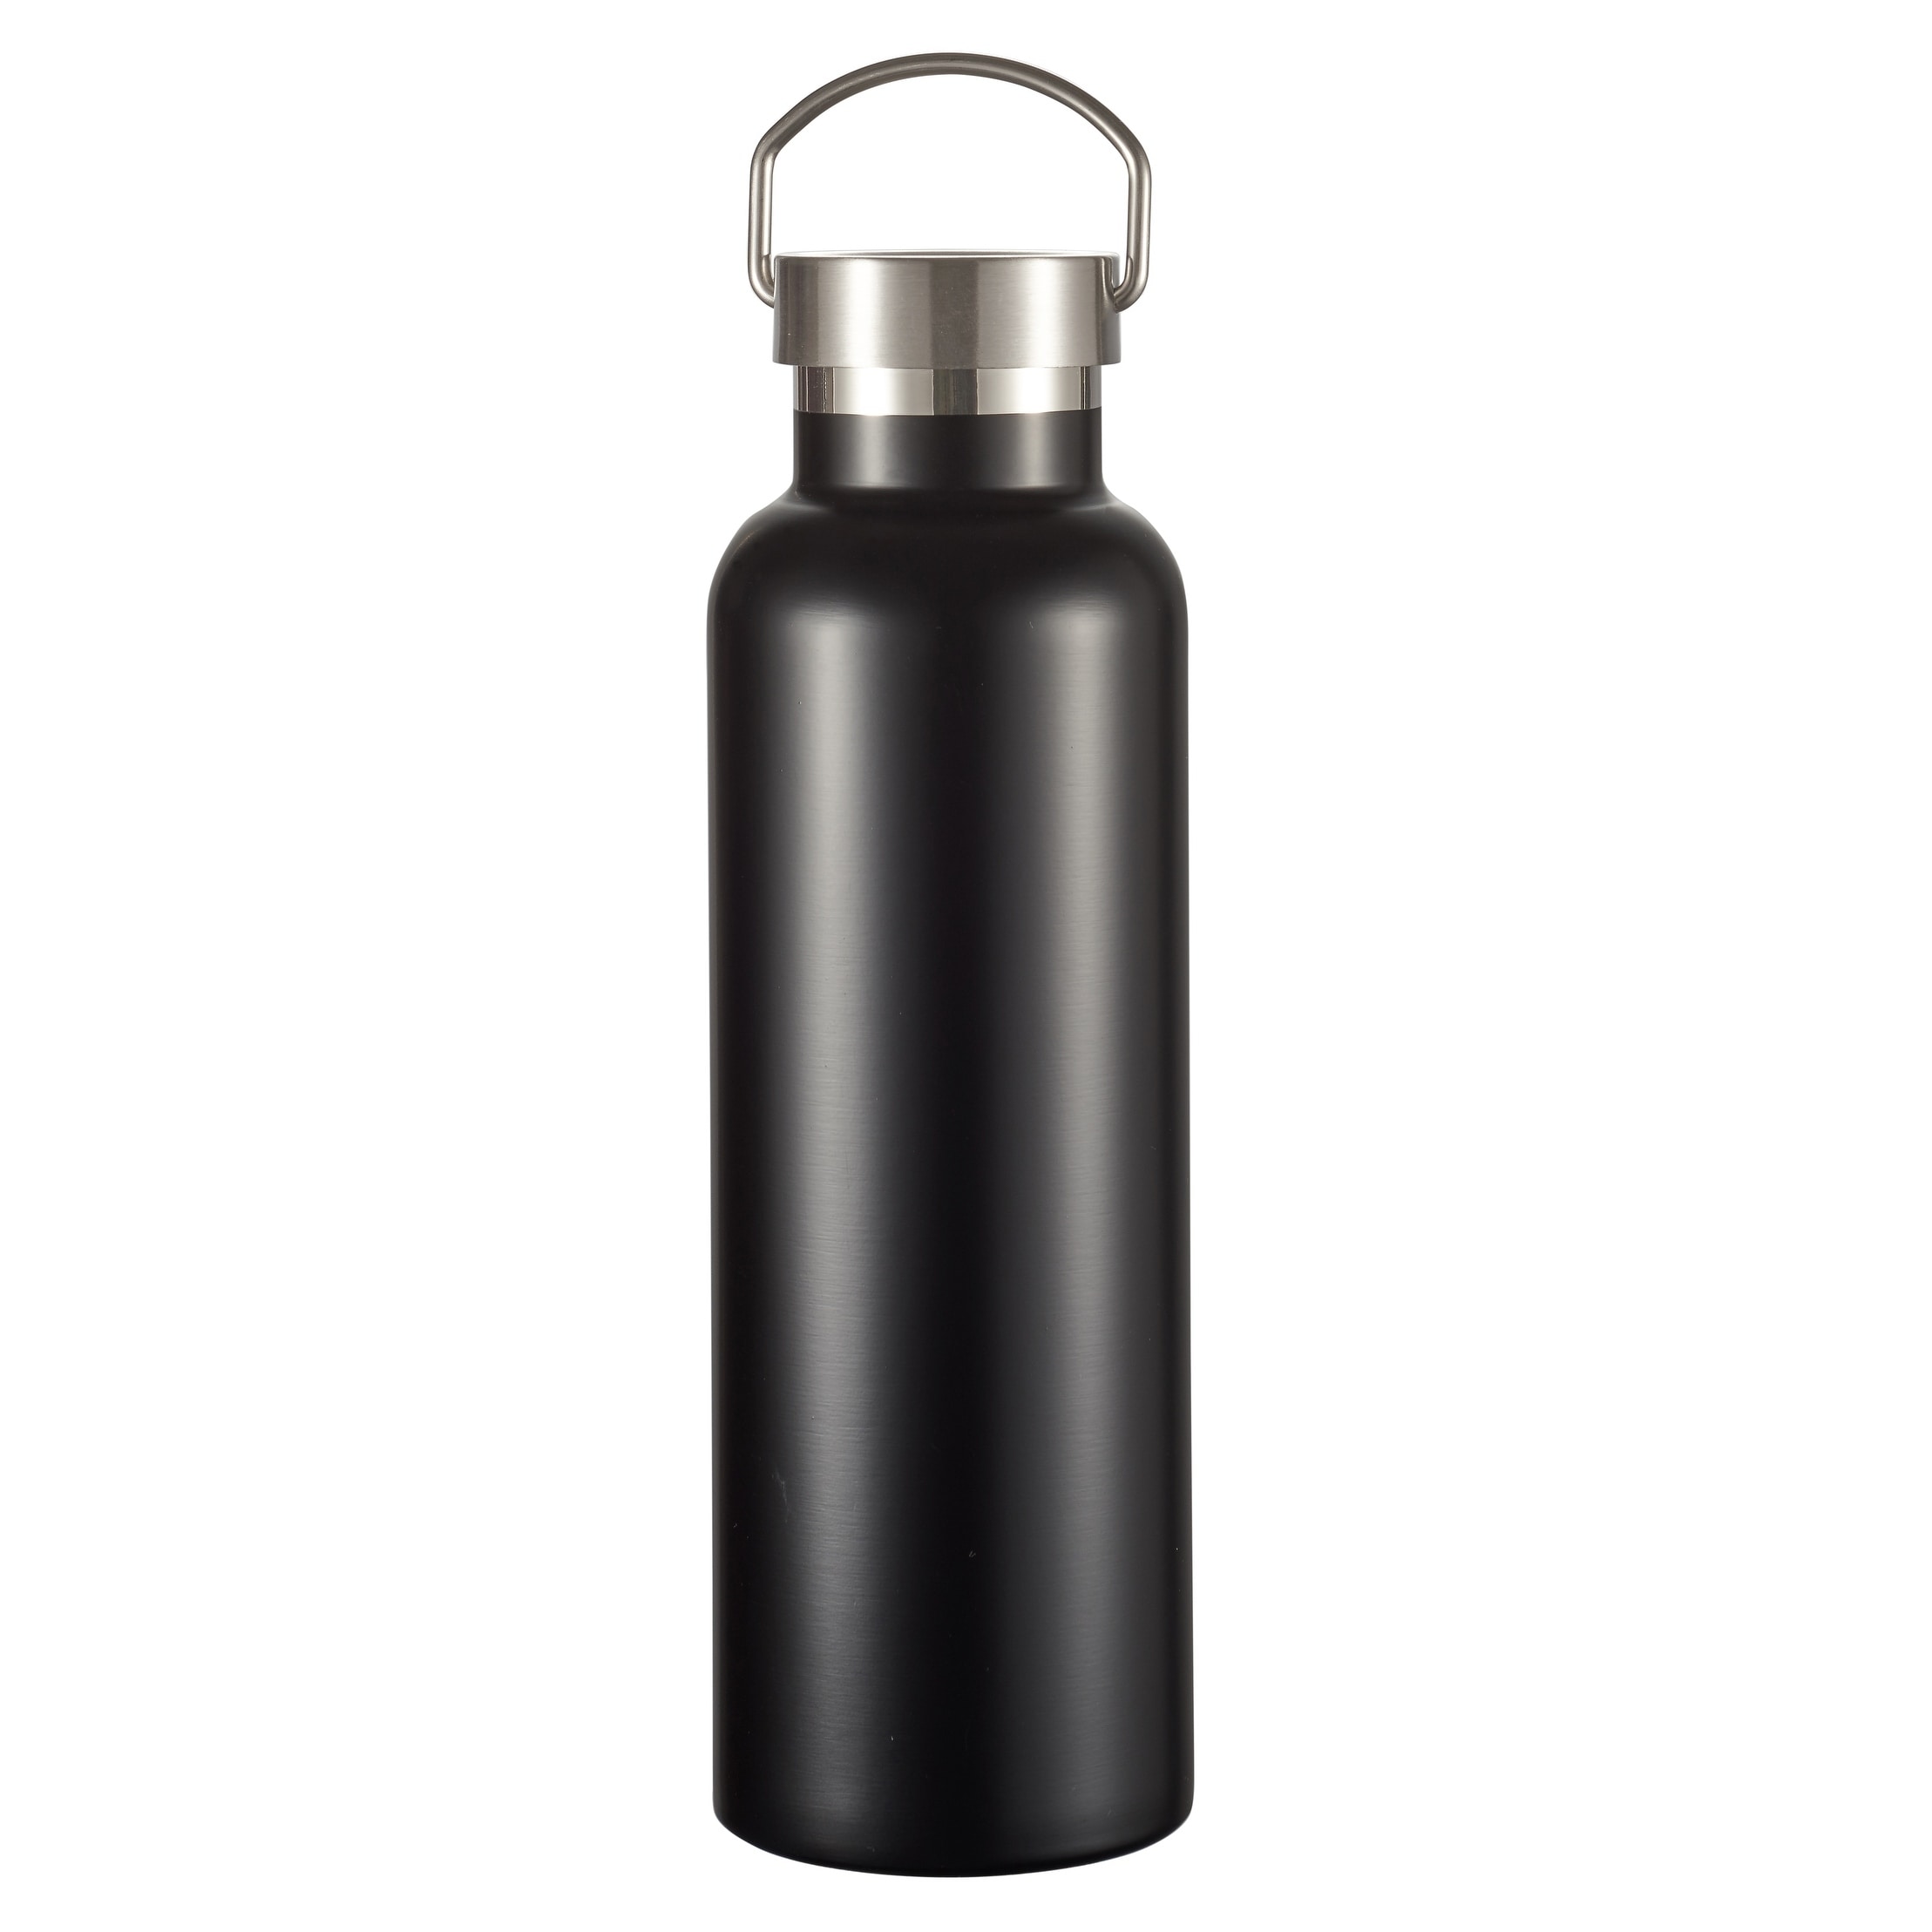 https://ak1.ostkcdn.com/images/products/18058367/Visol-James-Matte-Black-Insulated-Water-Bottle-24-Ounce-fba99d42-744d-427d-9bda-9fd5a4734775.jpg